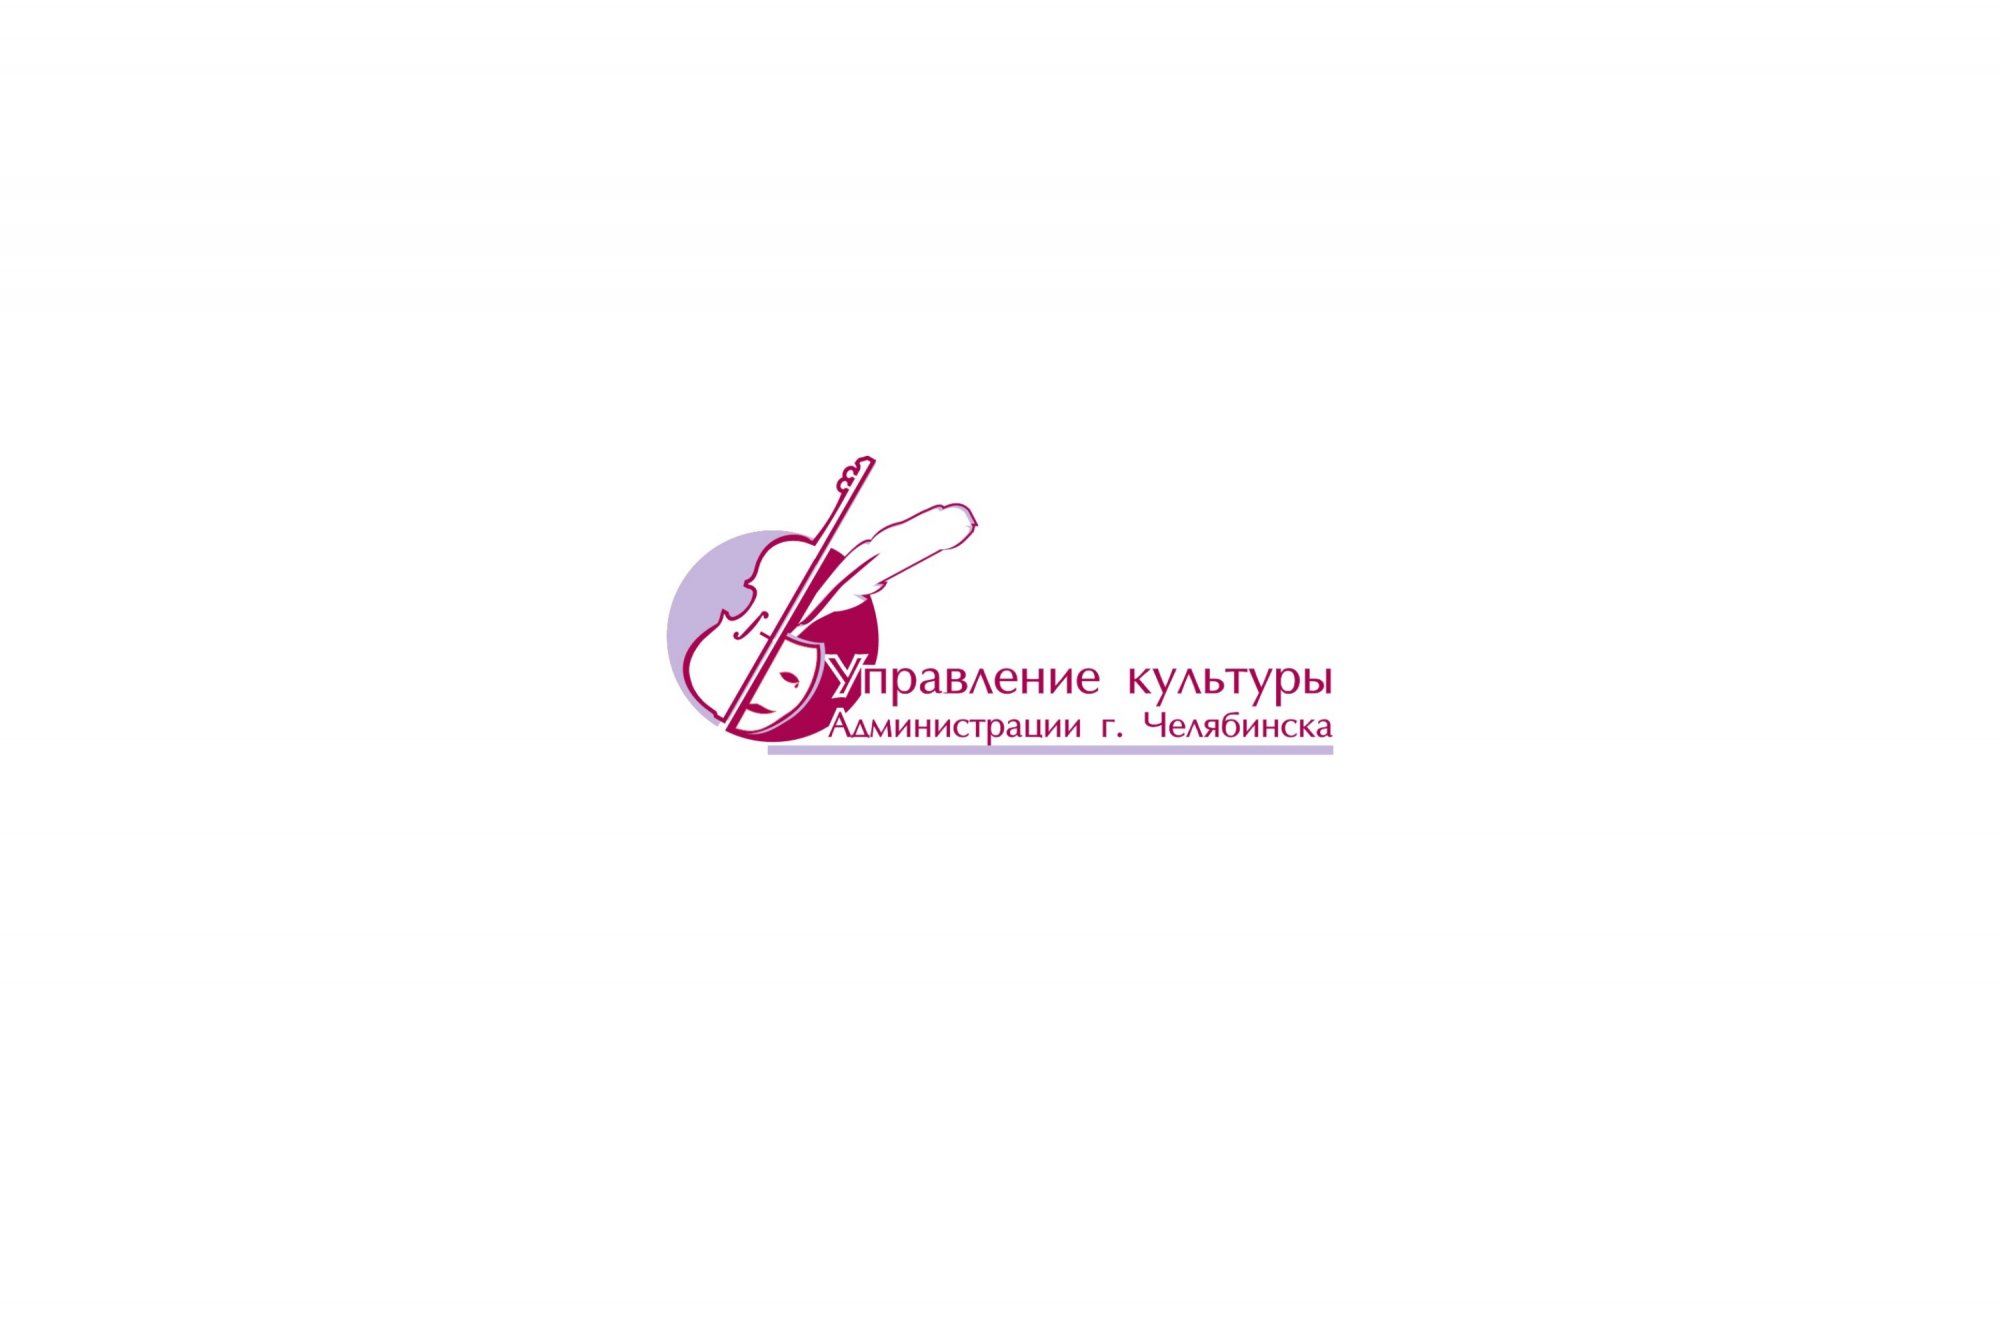 Управление культуры Челябинск